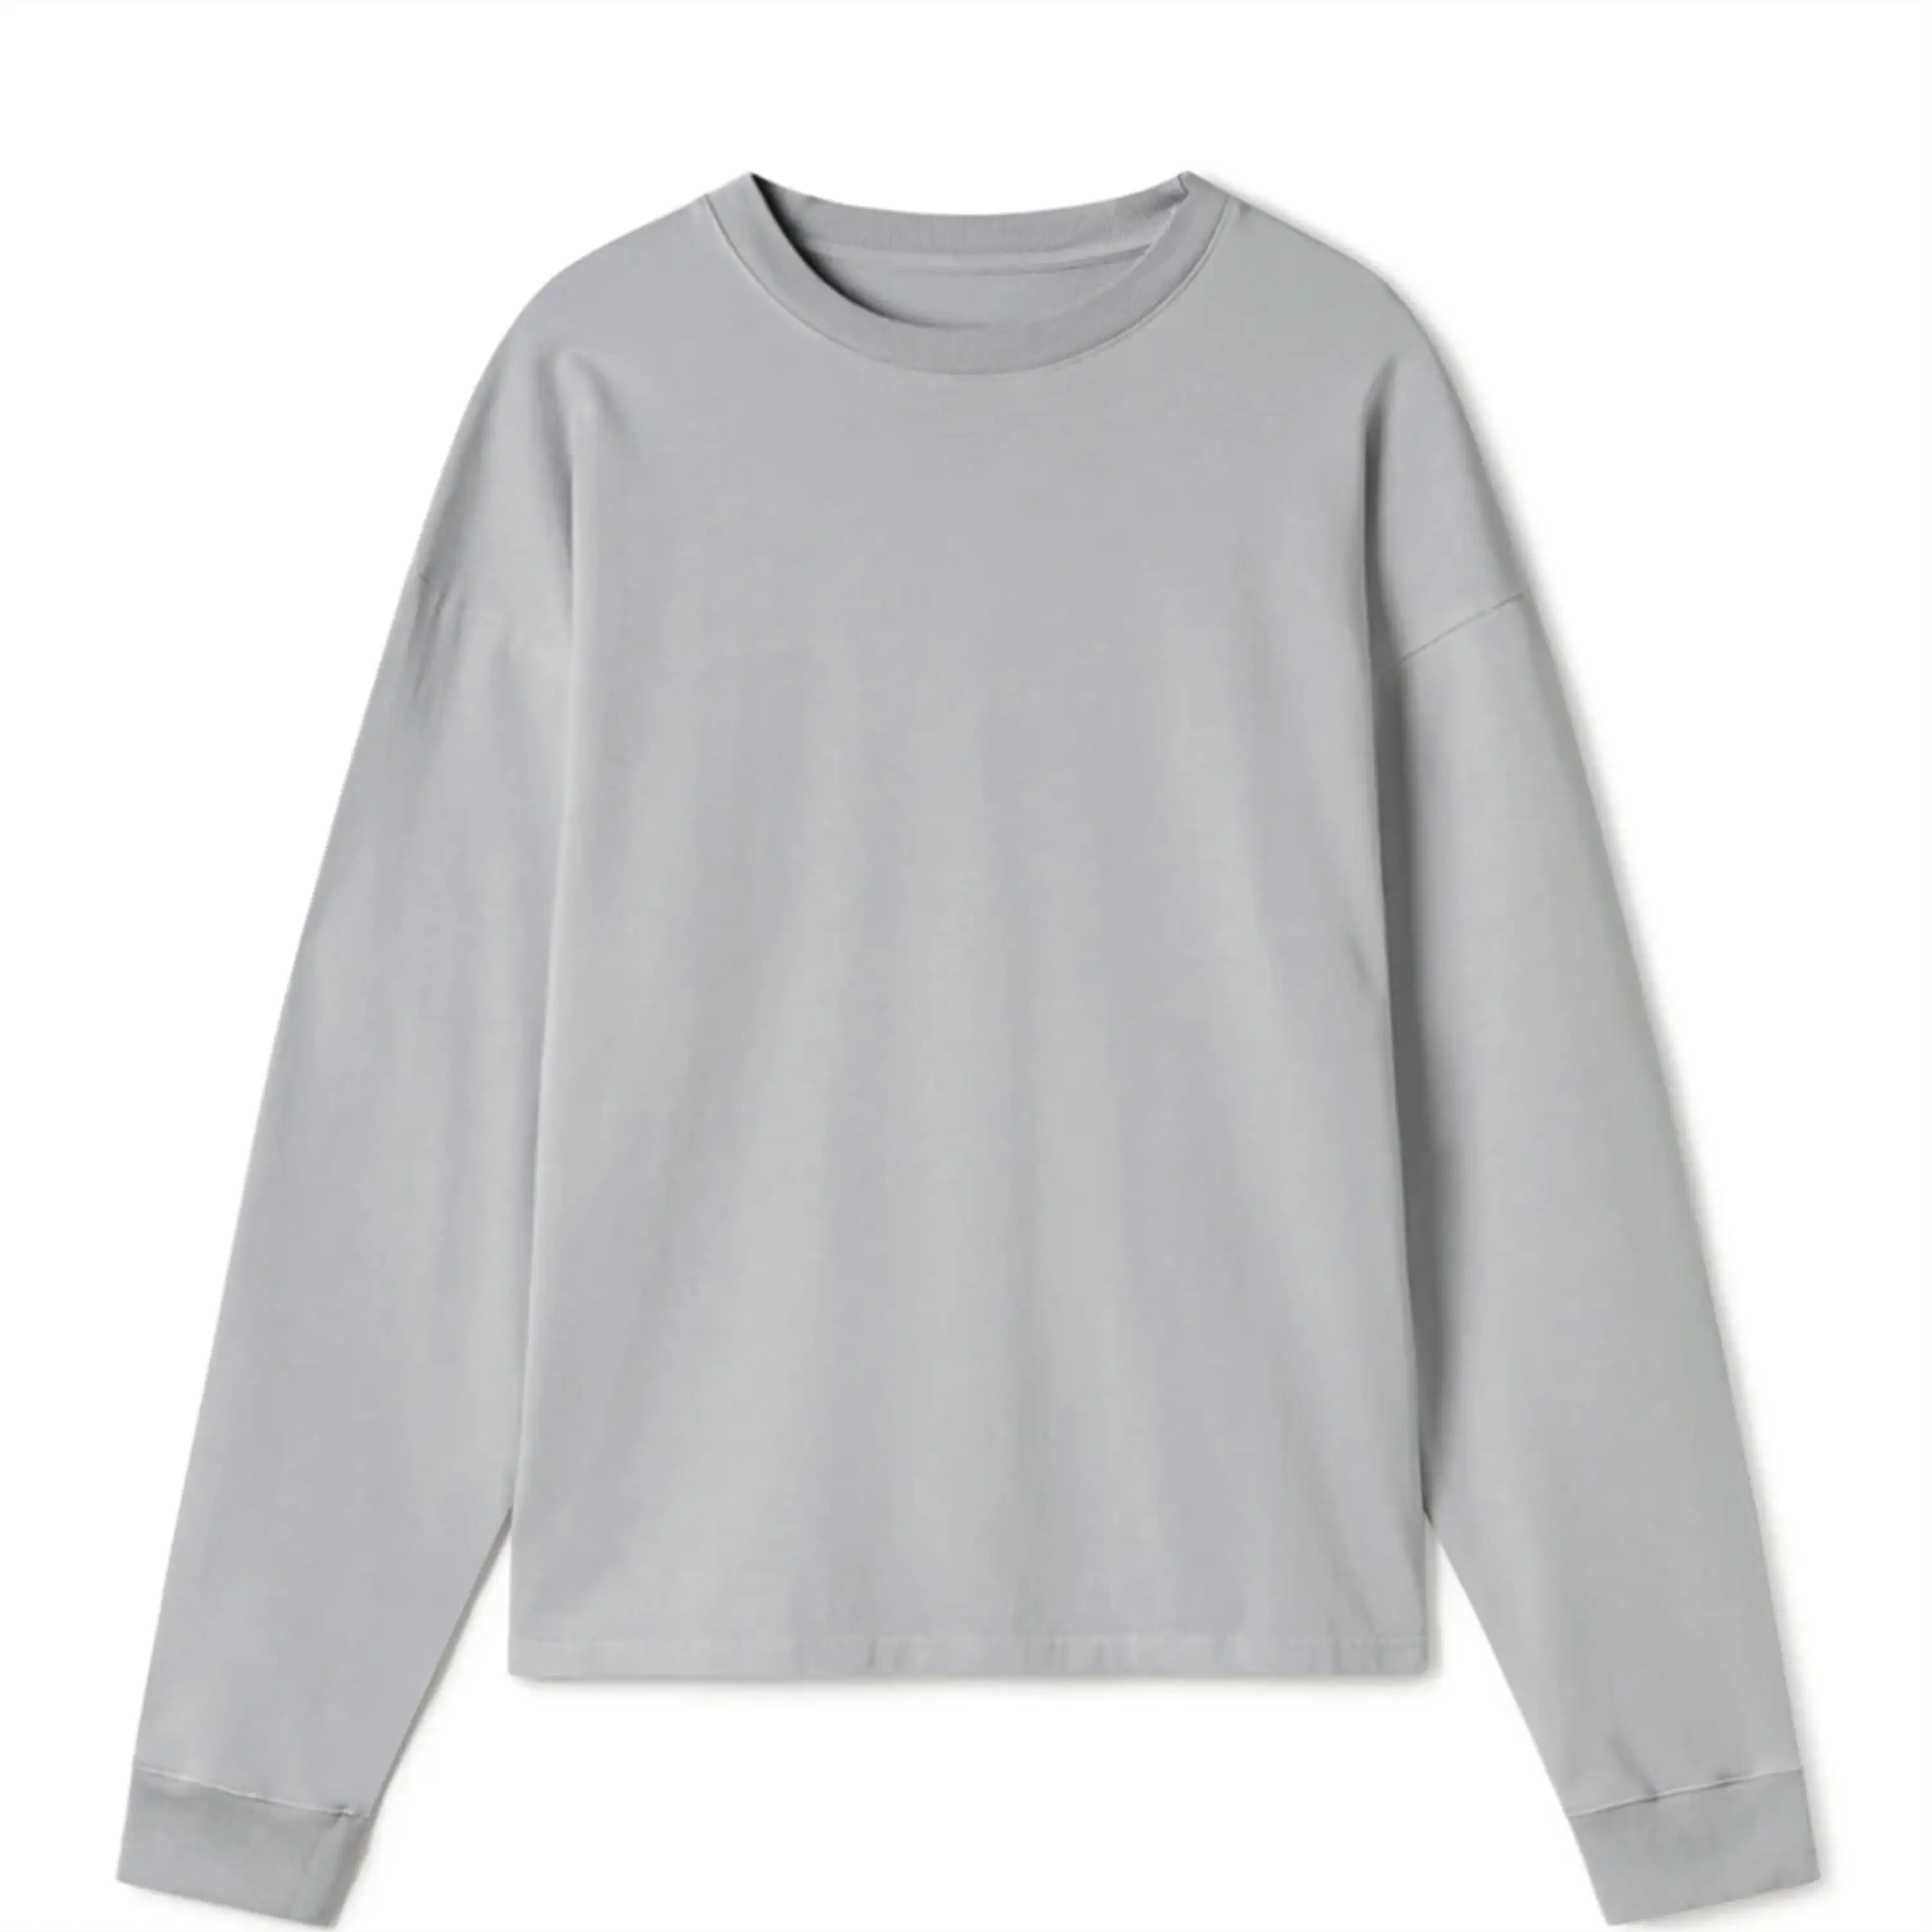 Camiseta básica de manga larga con cuello redondo de algodón de alta calidad para hombre, de manga larga Camiseta holgada sin costuras con logotipo impreso